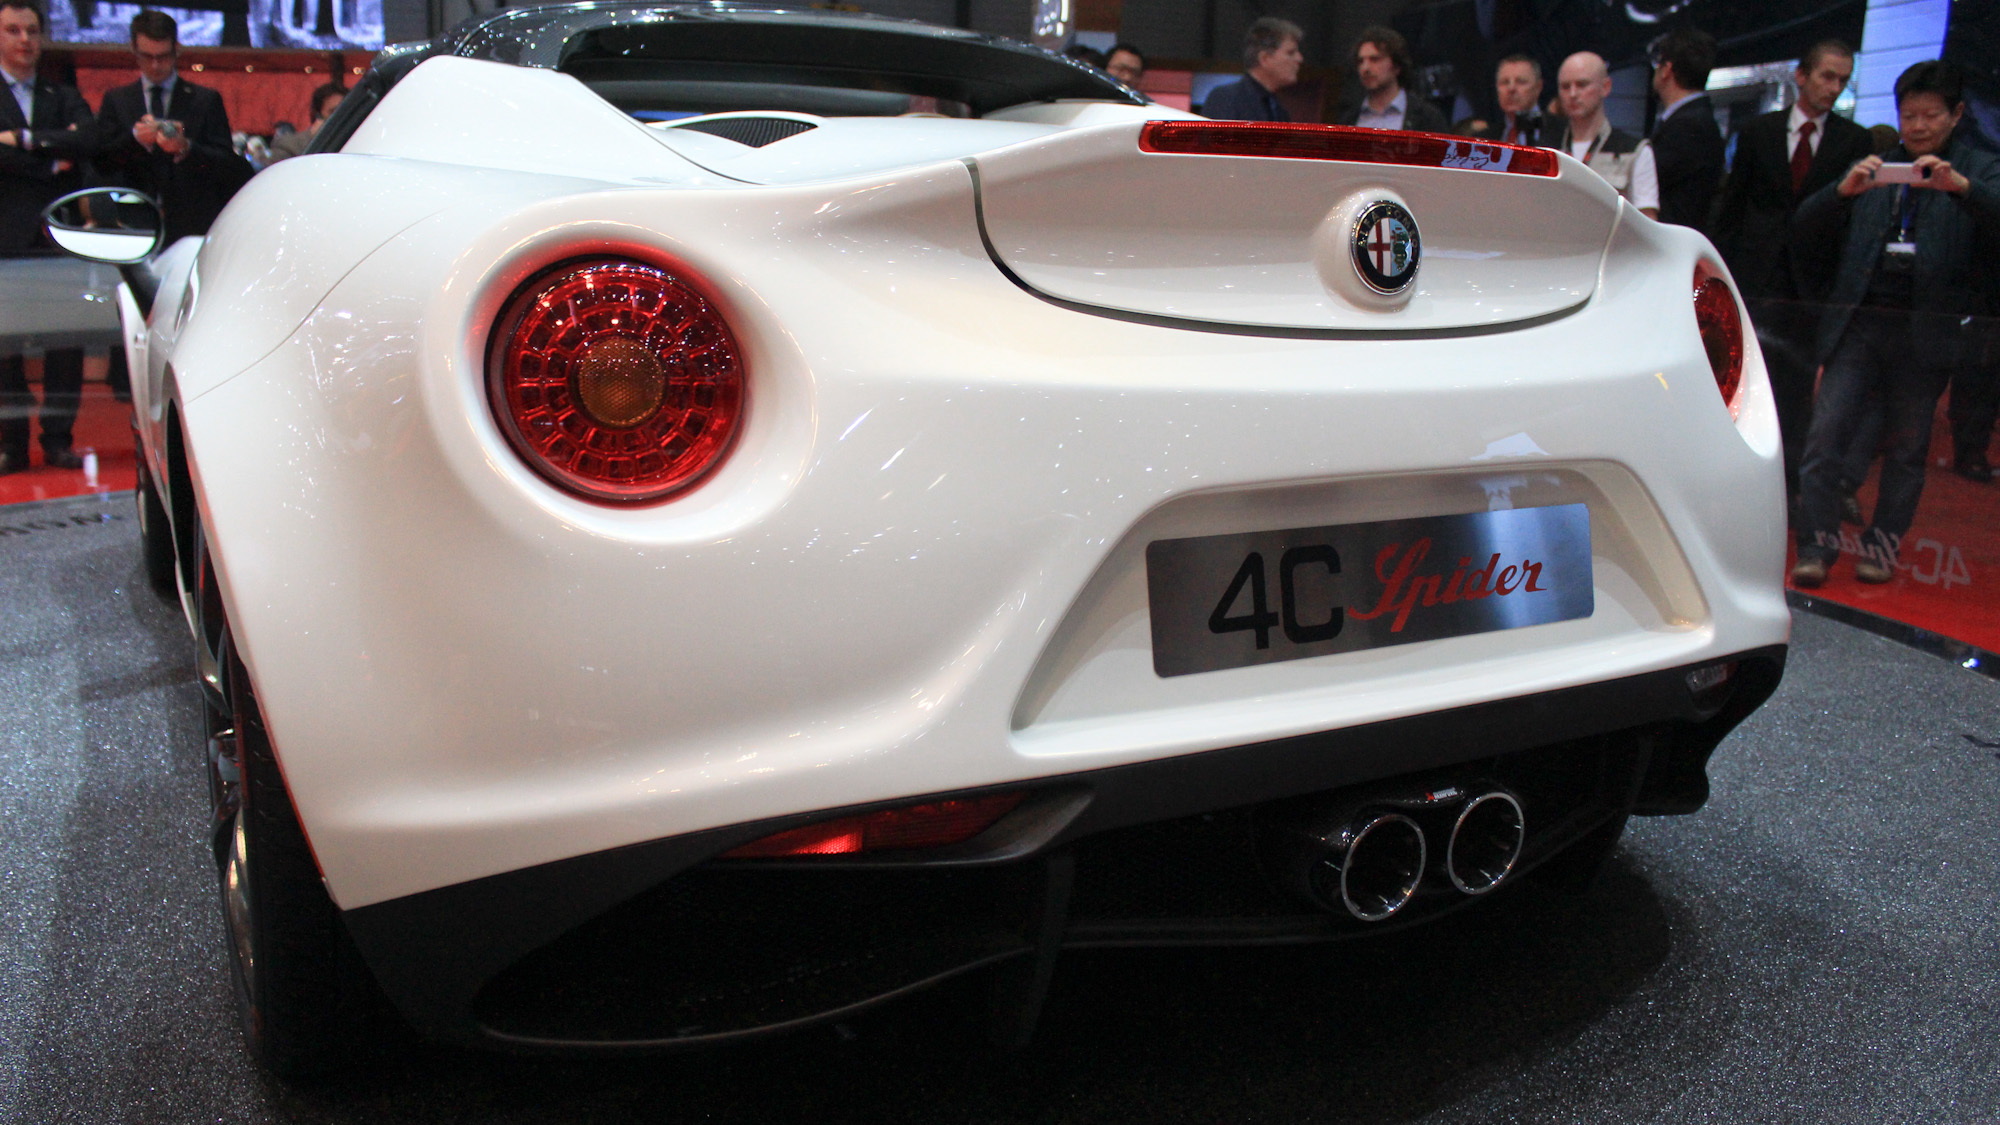 Alfa Romeo 4C Spider, 2014 Geneva Motor Show